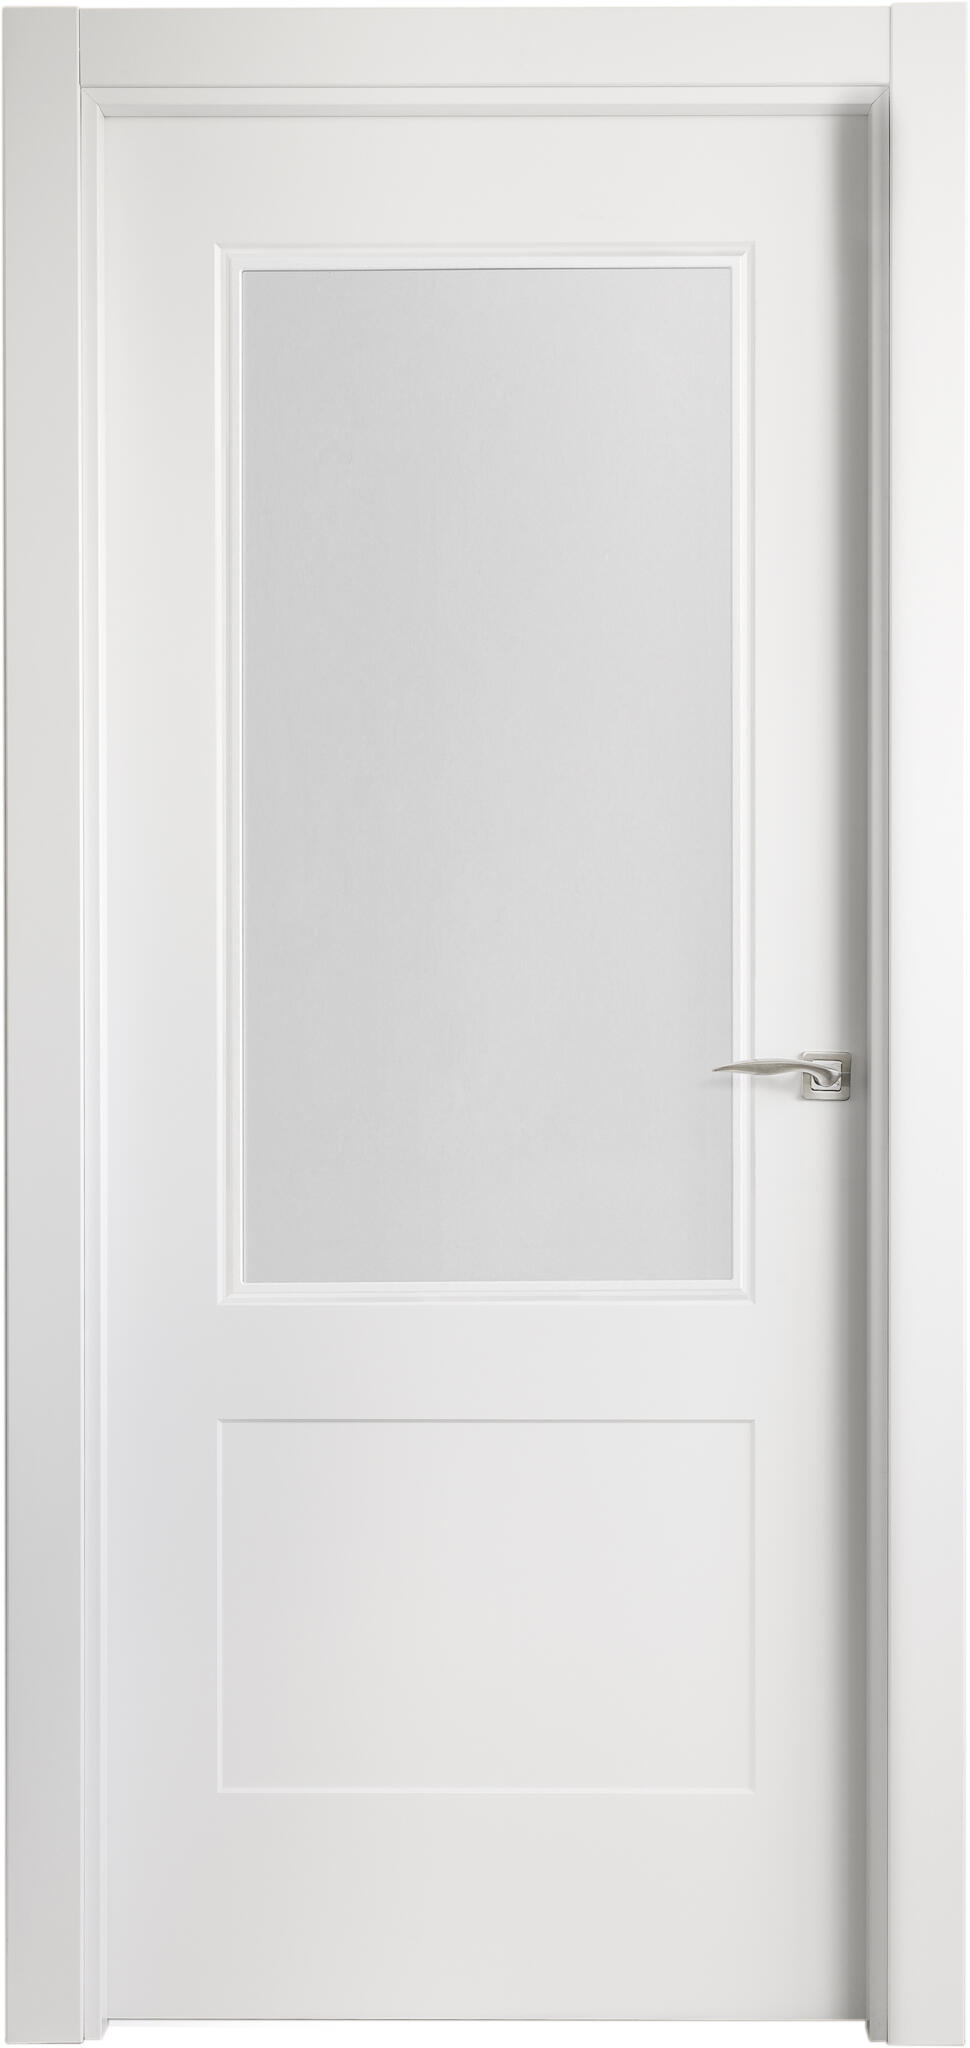 Puerta atlanta plus blanco apertura izquierda con cristal de 72,5cm